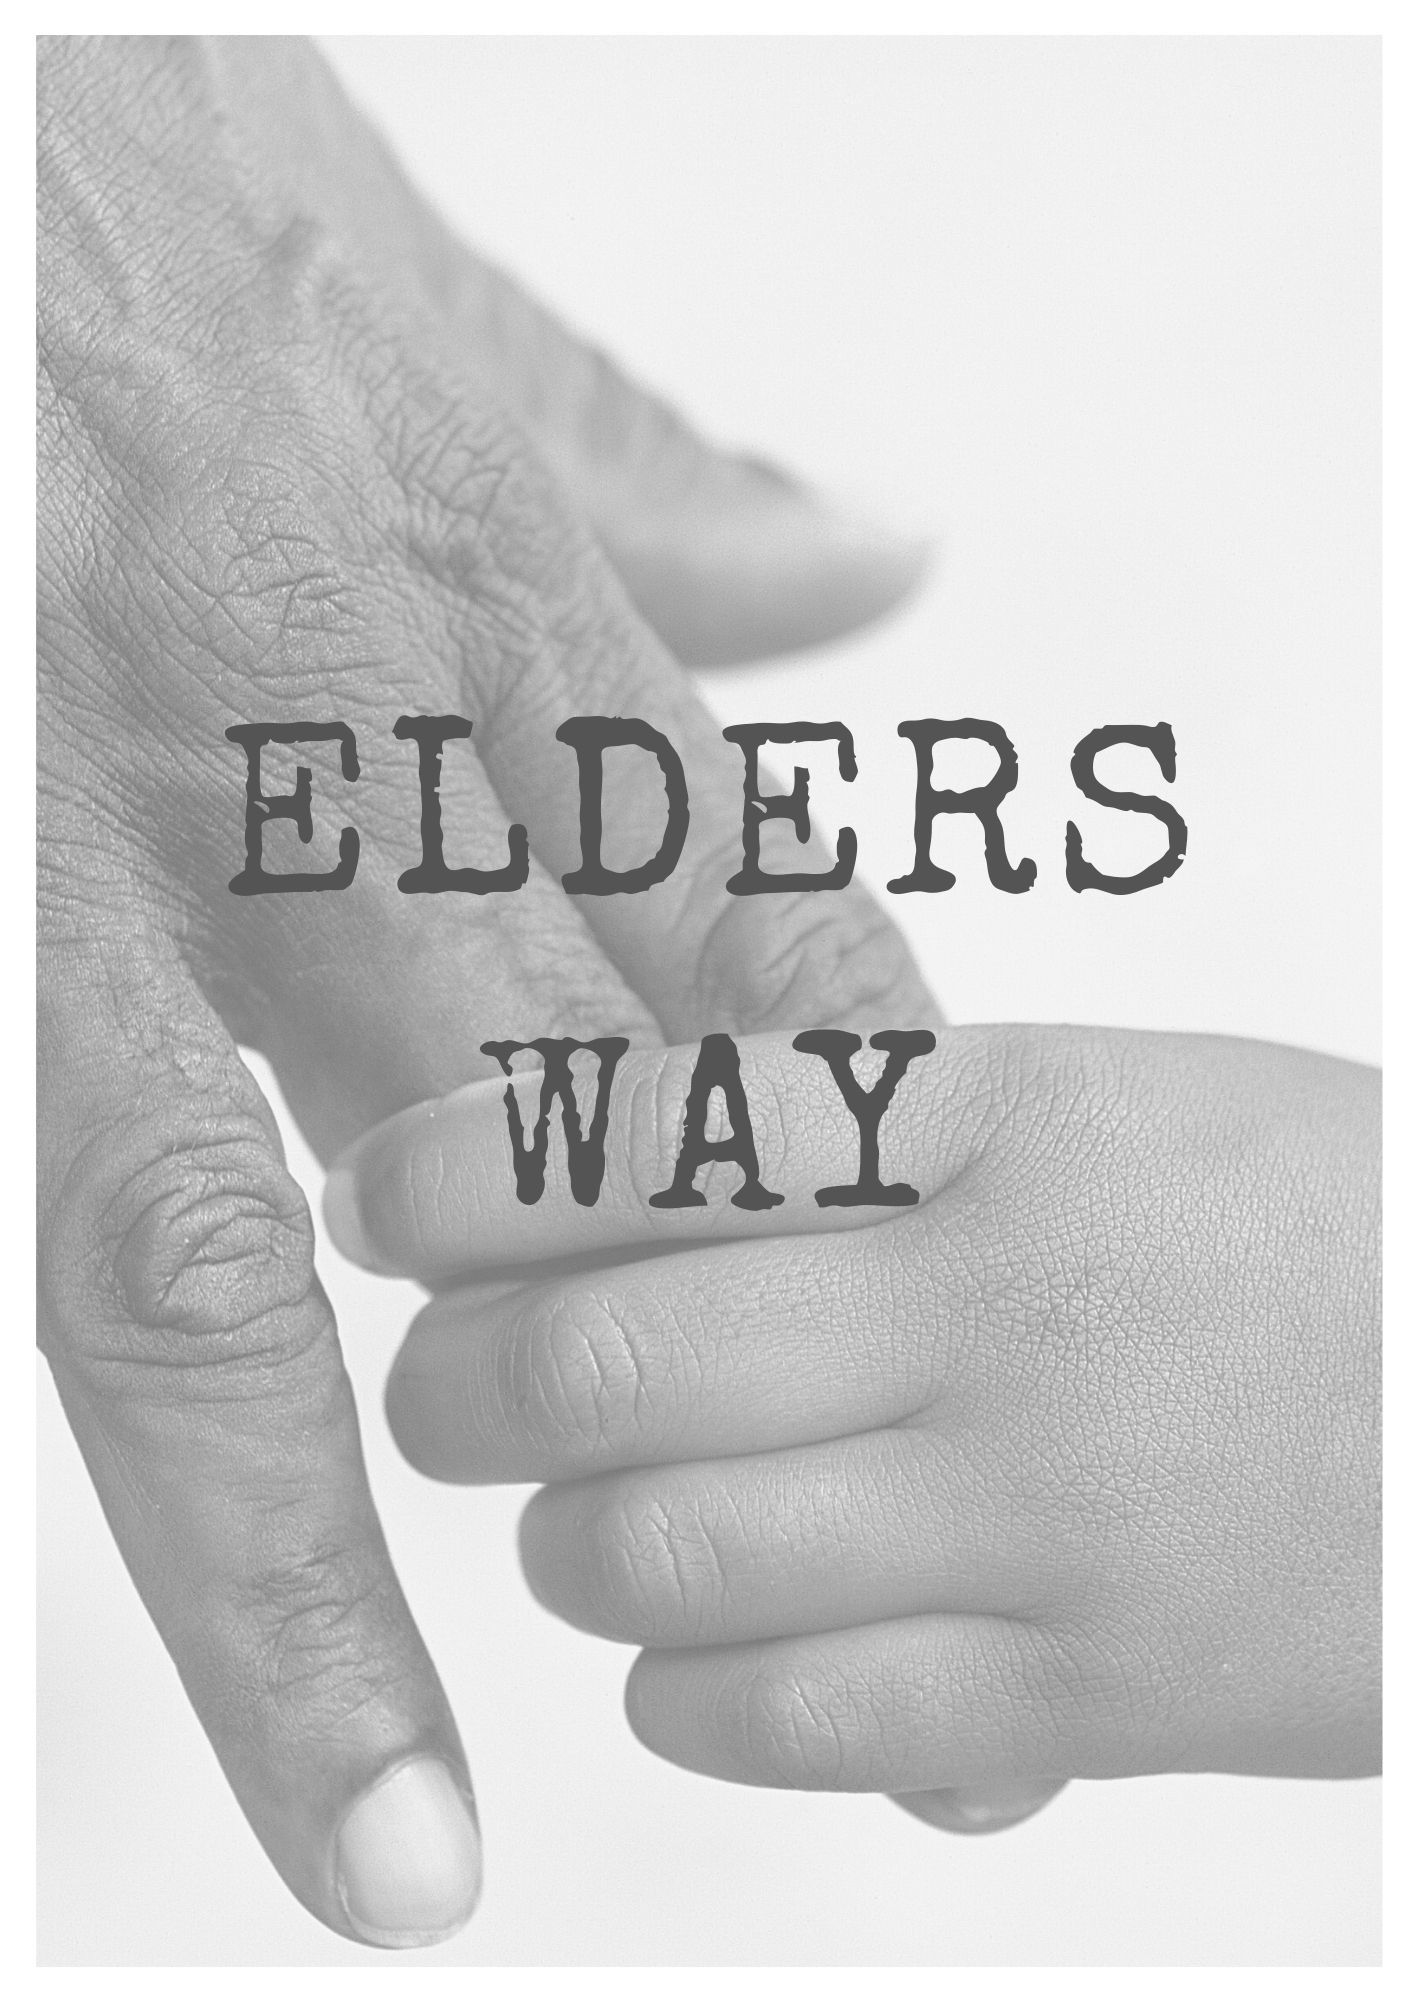 ELDERS WAY